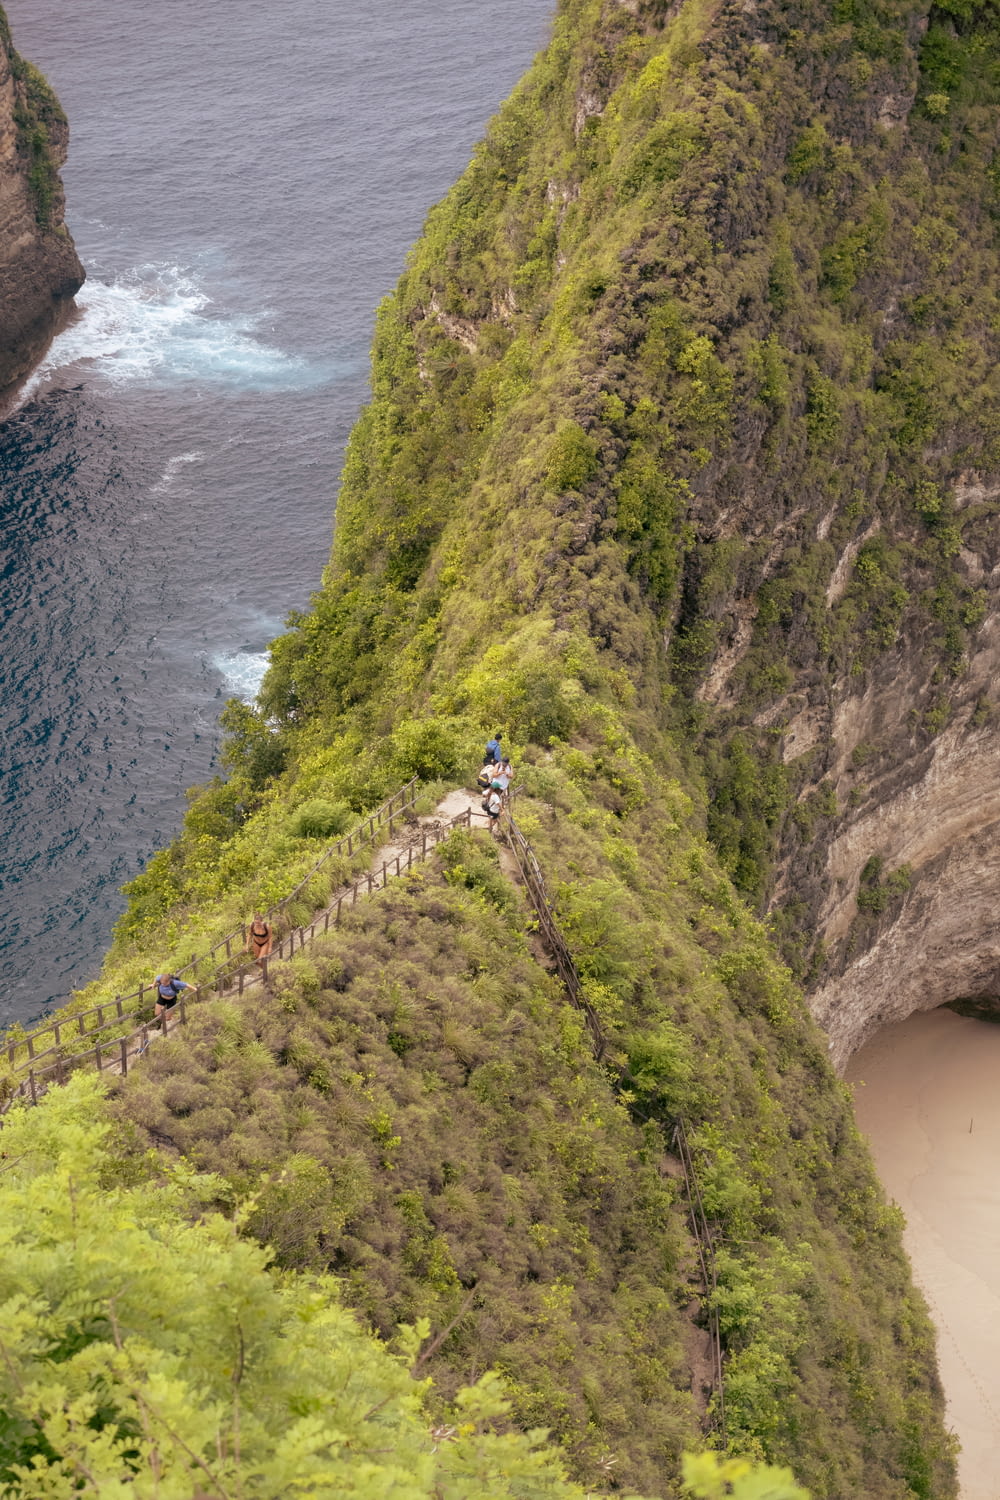 Un grupo de personas subiendo una colina empinada junto al océano